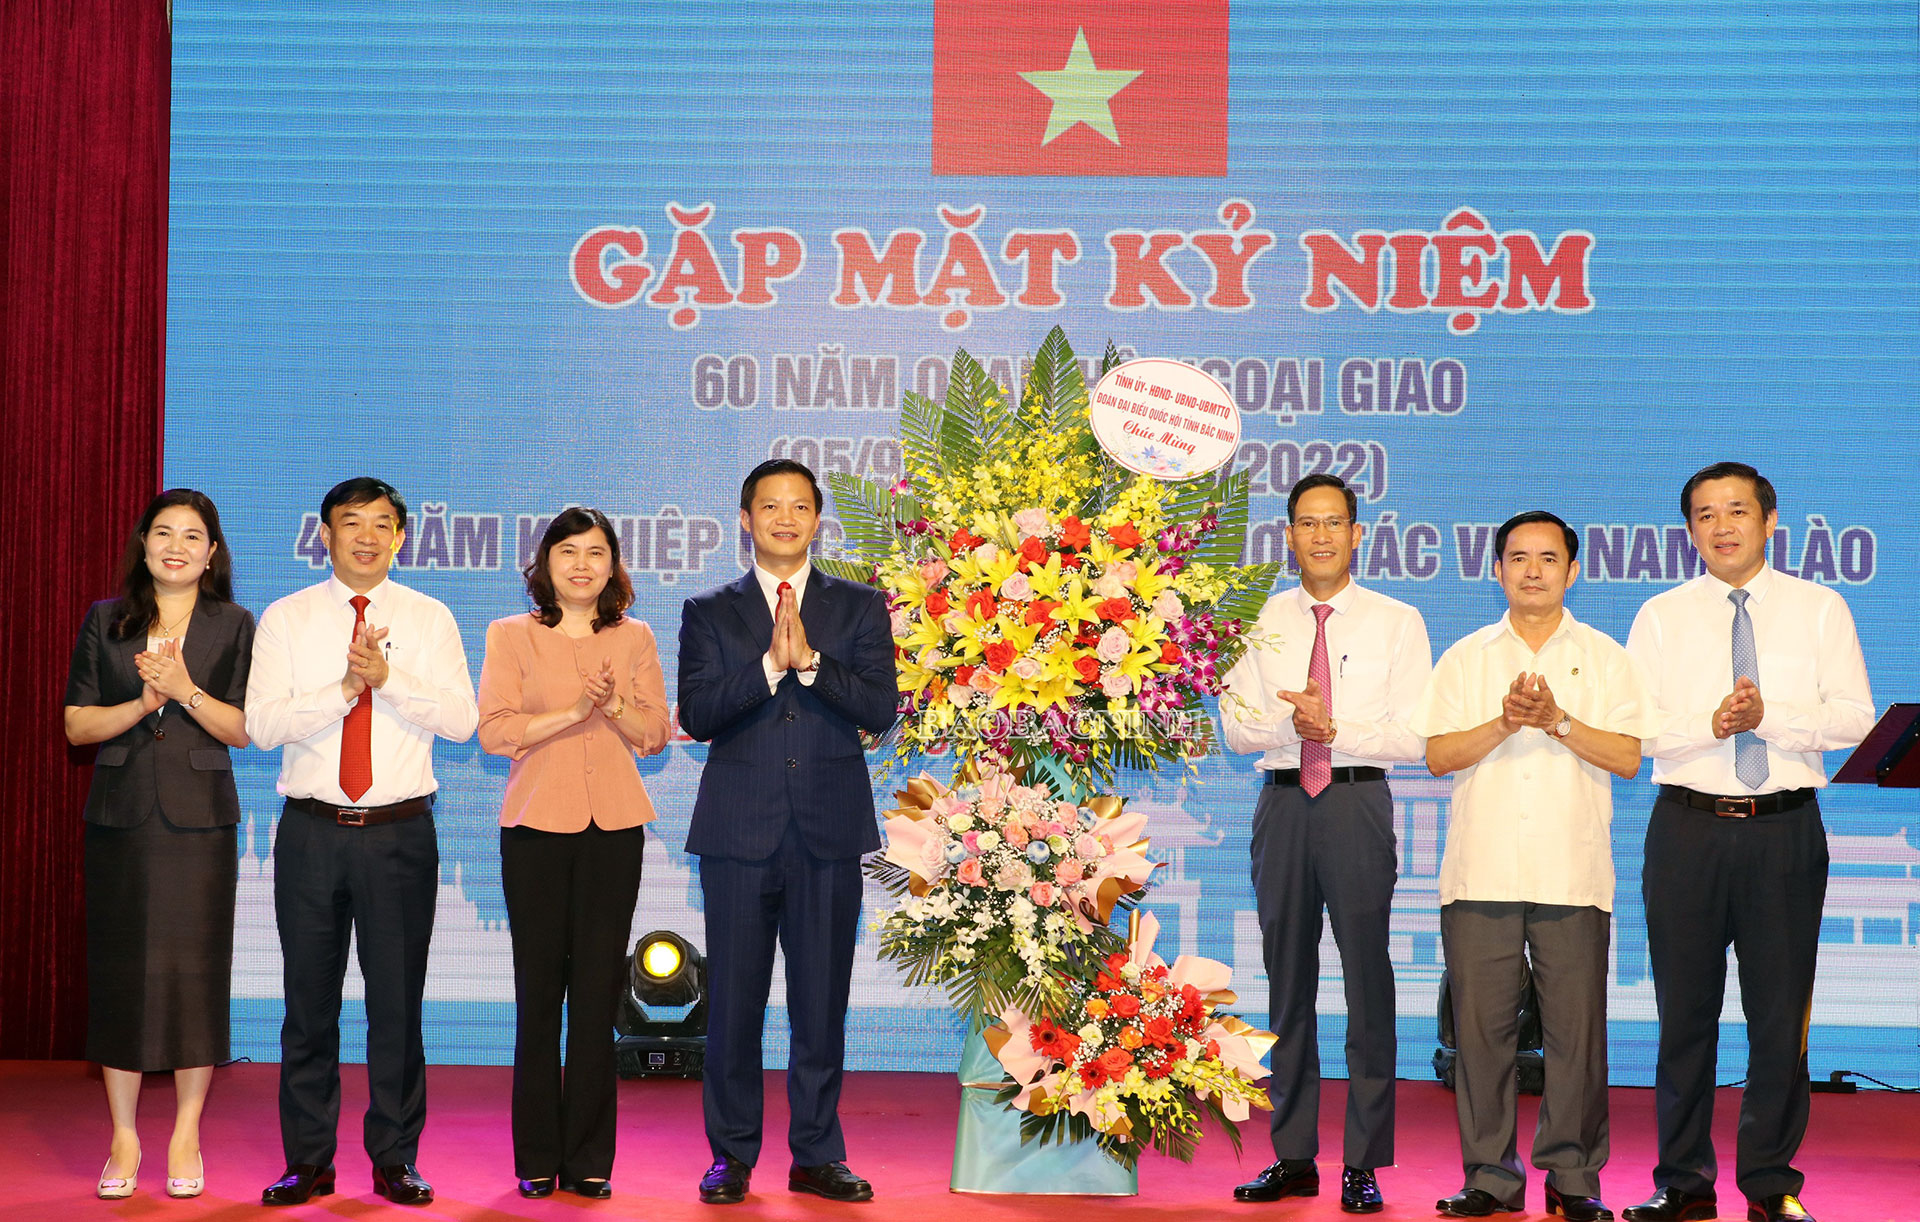 Gặp mặt kỷ niệm 60 năm Ngày thiết lập quan hệ ngoại giao Việt Nam - Lào